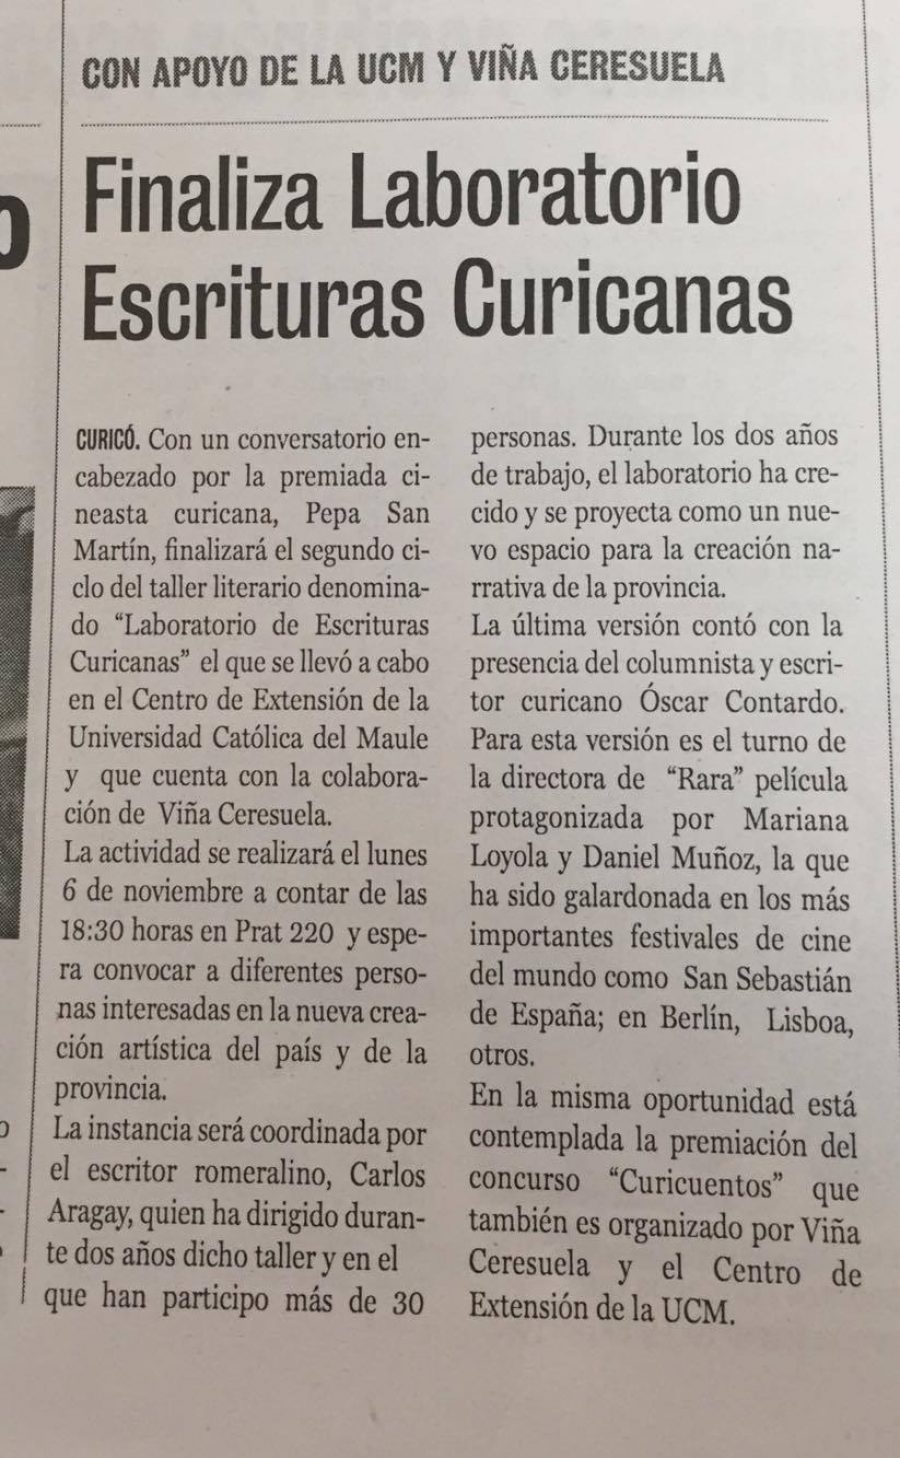 31 de octubre en Diario La Prensa: “Finaliza Laboratorio  Escrituras Curicanas”